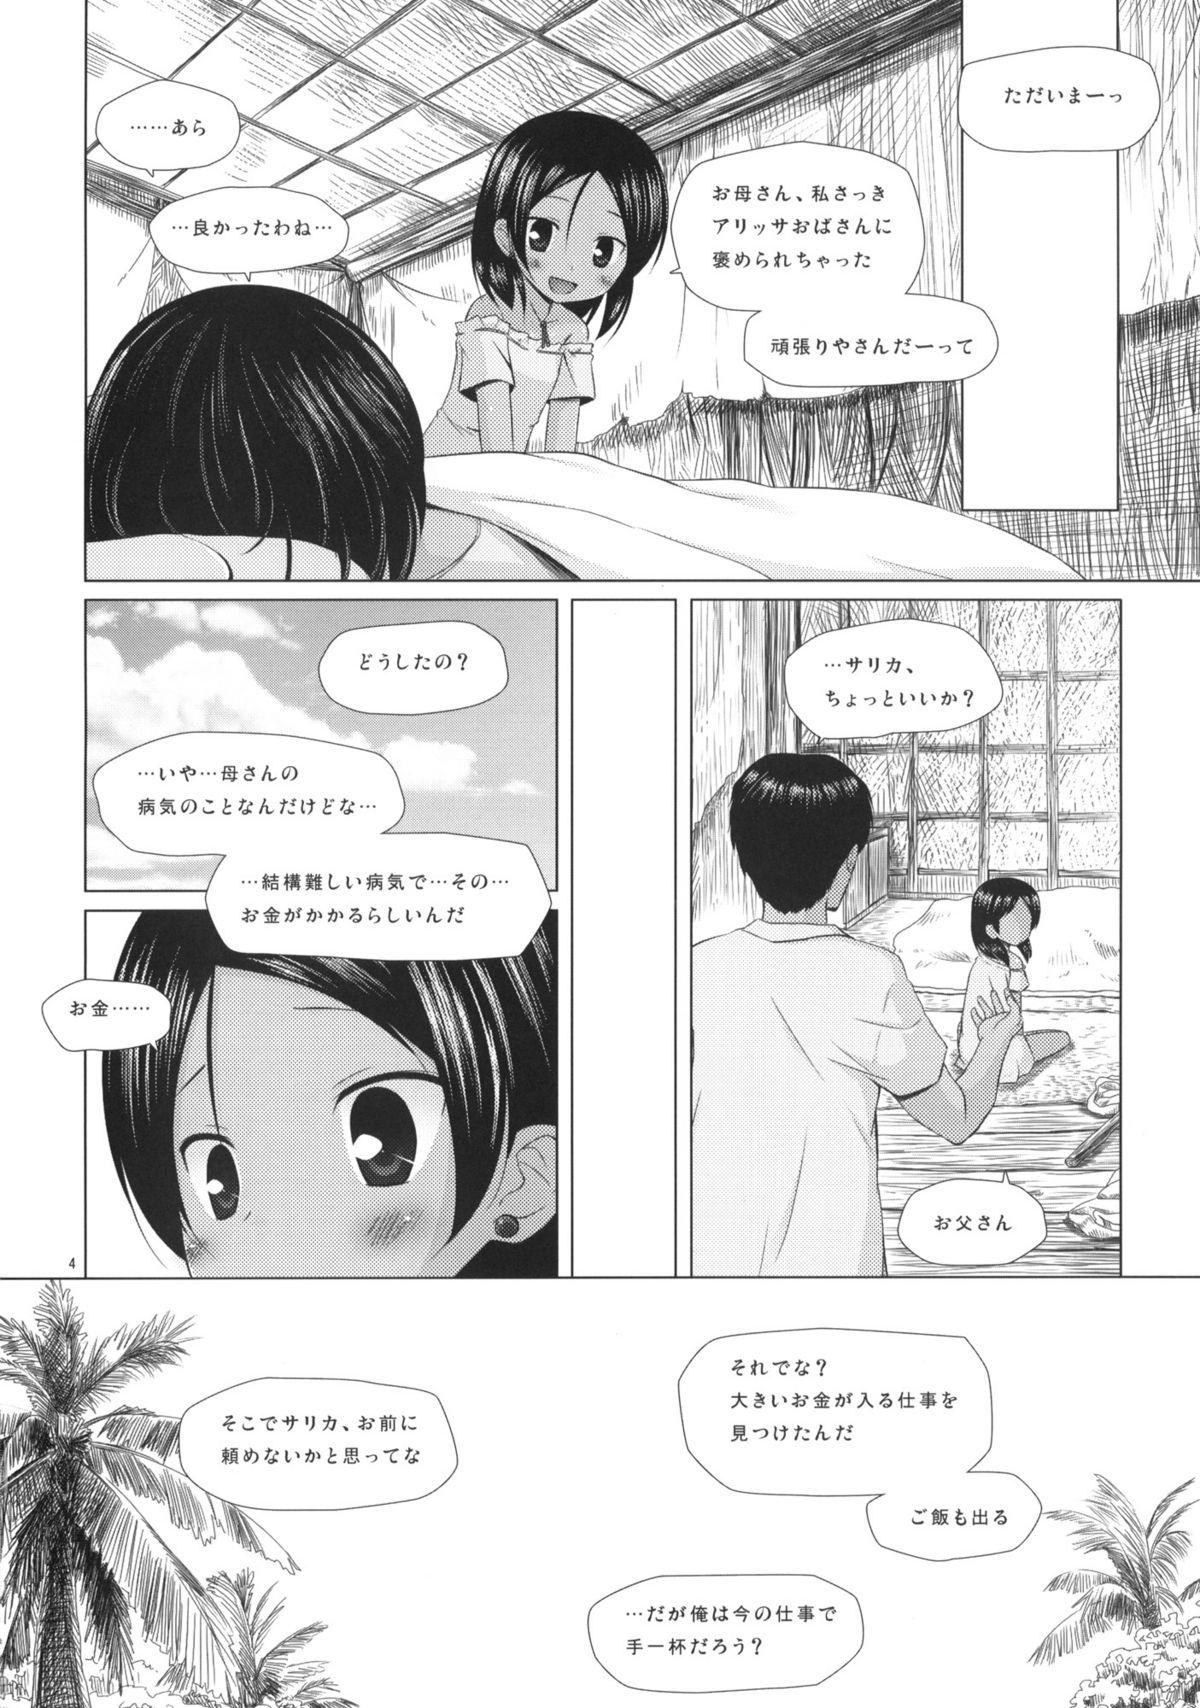 Parody Kago no Naka no Kotori wa Itsu Deyaru Mmf - Page 3